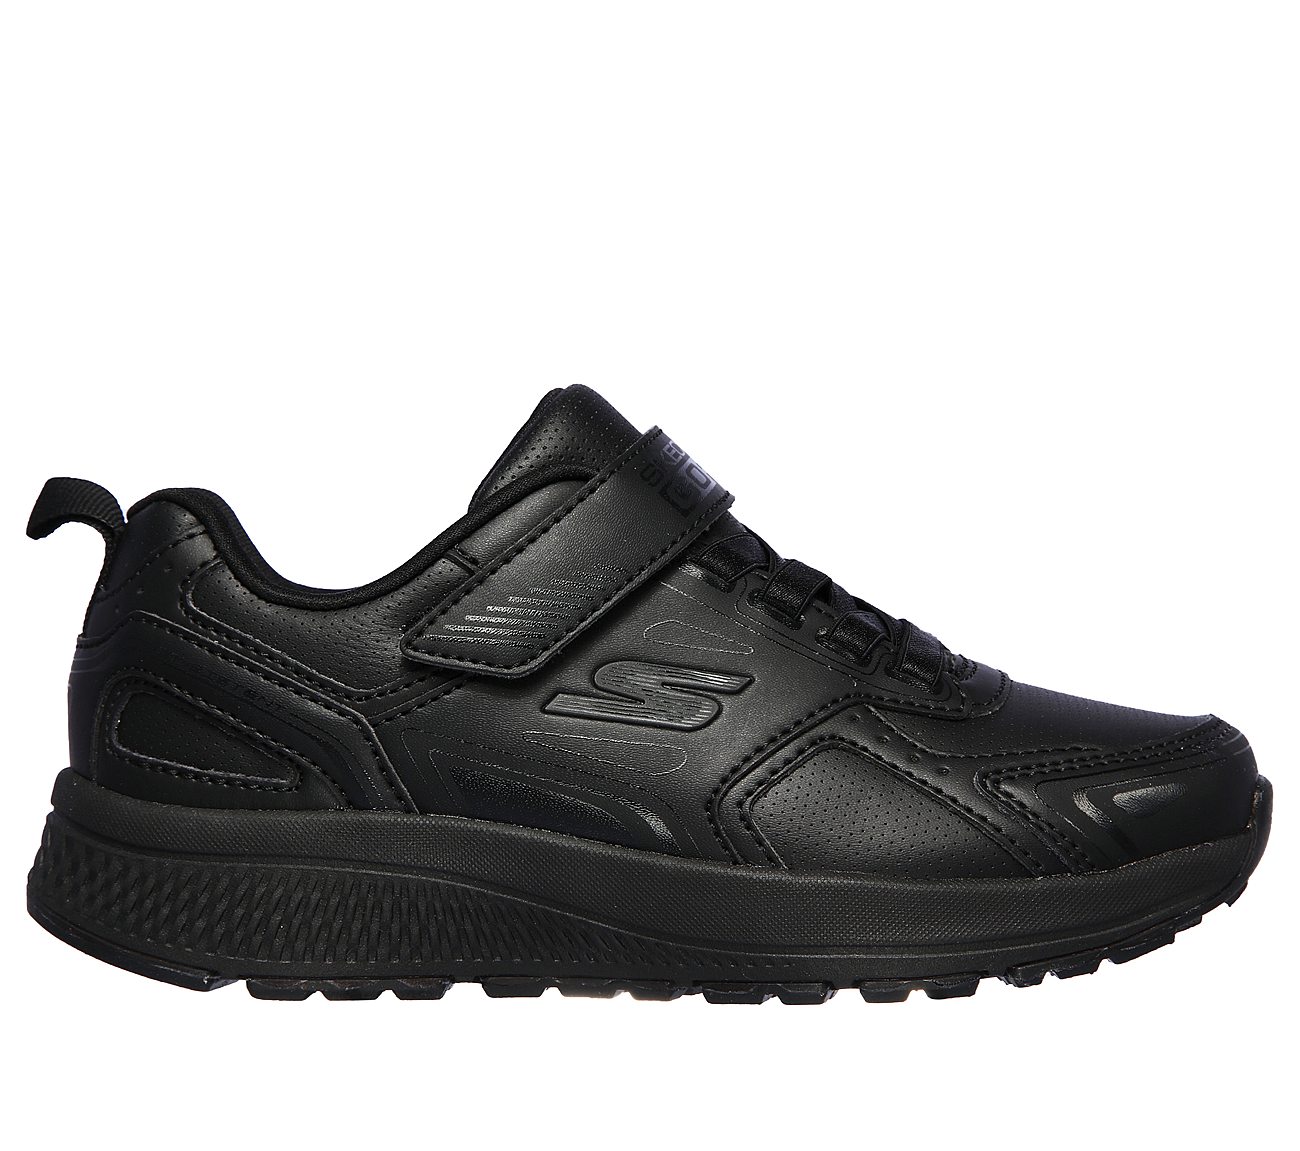 Buy SKECHERS GOrun Consistent - Recess Runner Skechers Performance Shoes